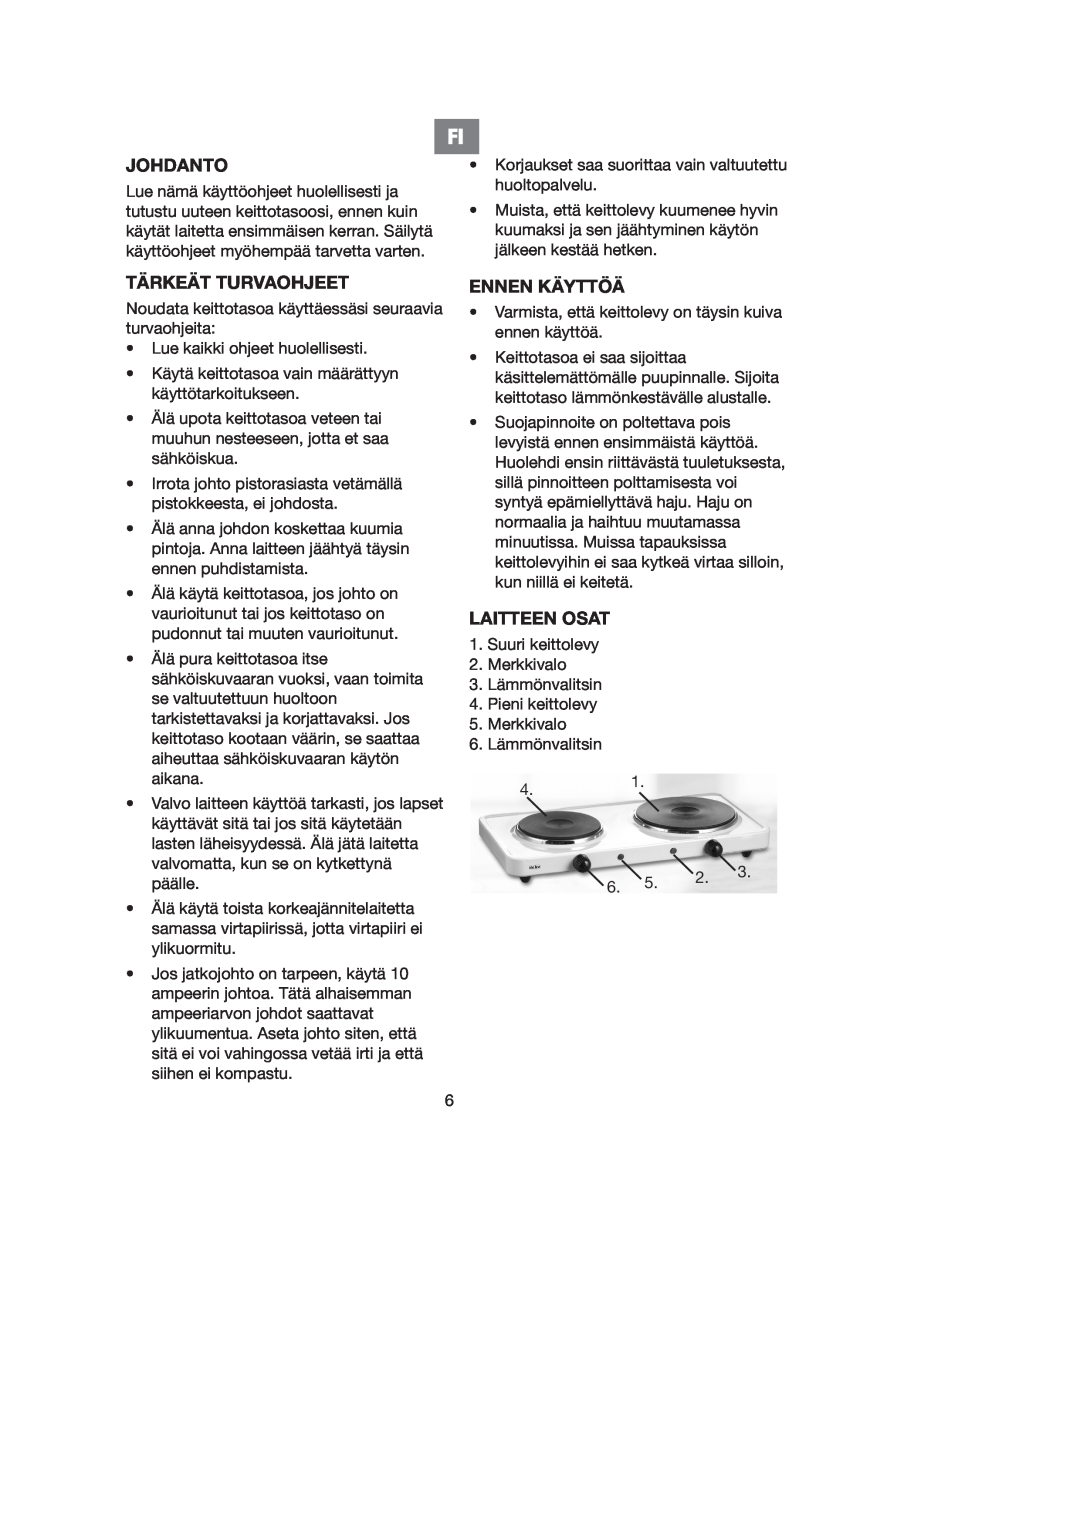 Melissa 750-027 manual Johdanto, Tärkeät Turvaohjeet, Ennen Käyttöä, Laitteen Osat 